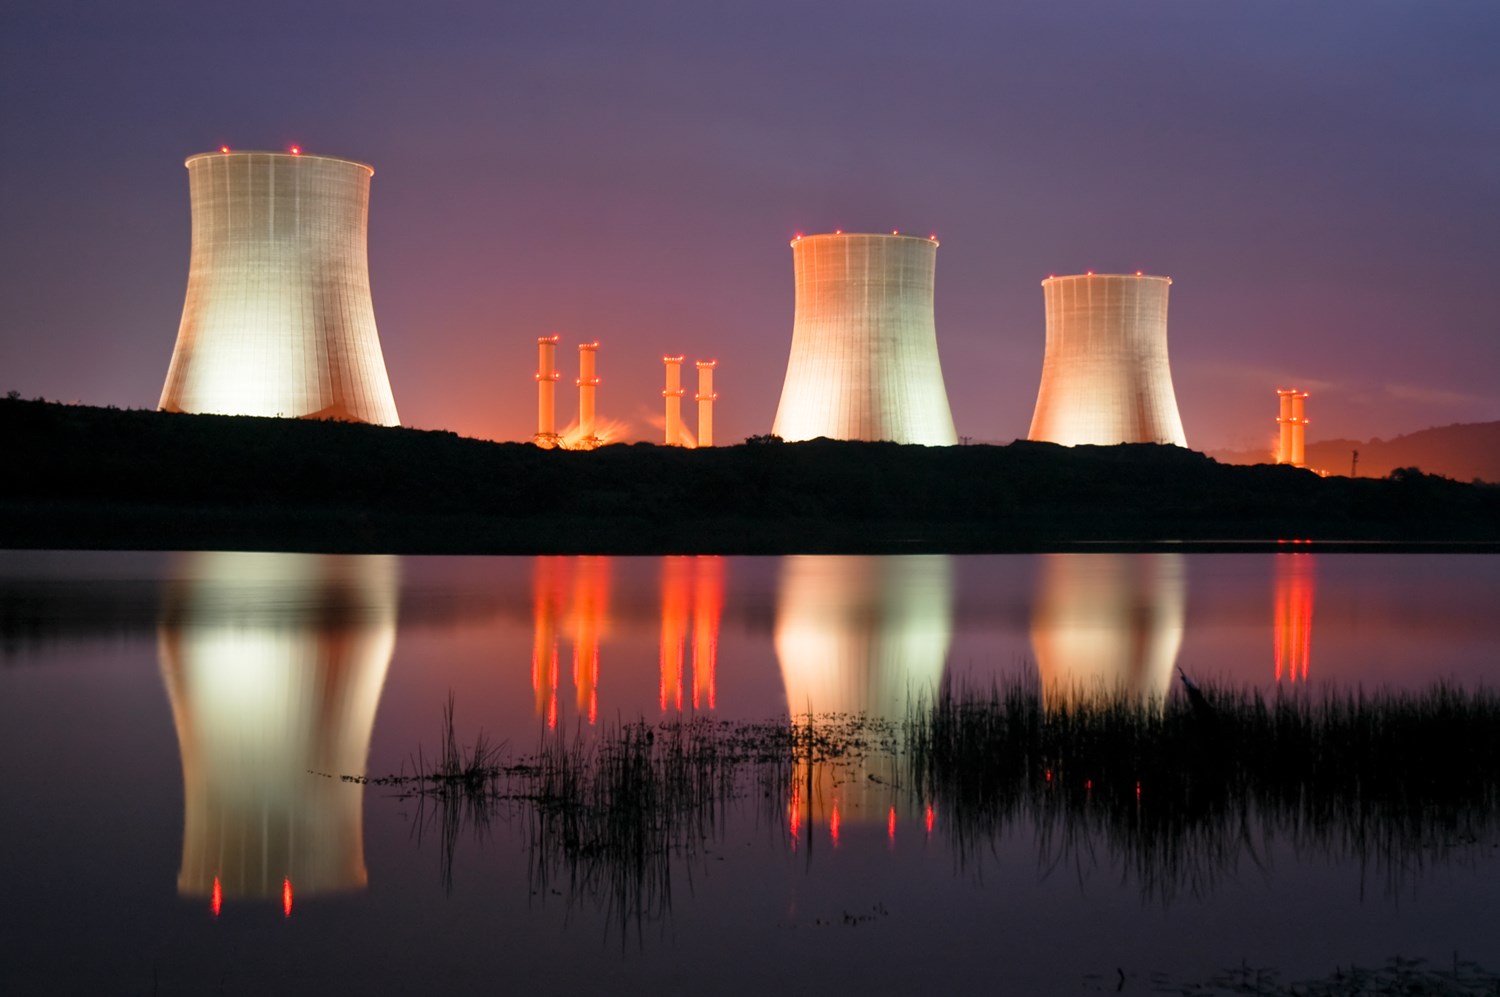 Özbekistan nükleer enerjiye 'Evet' dedi! Ülkenin ilk nükleer santrali 2028’de faaliyete geçecek!